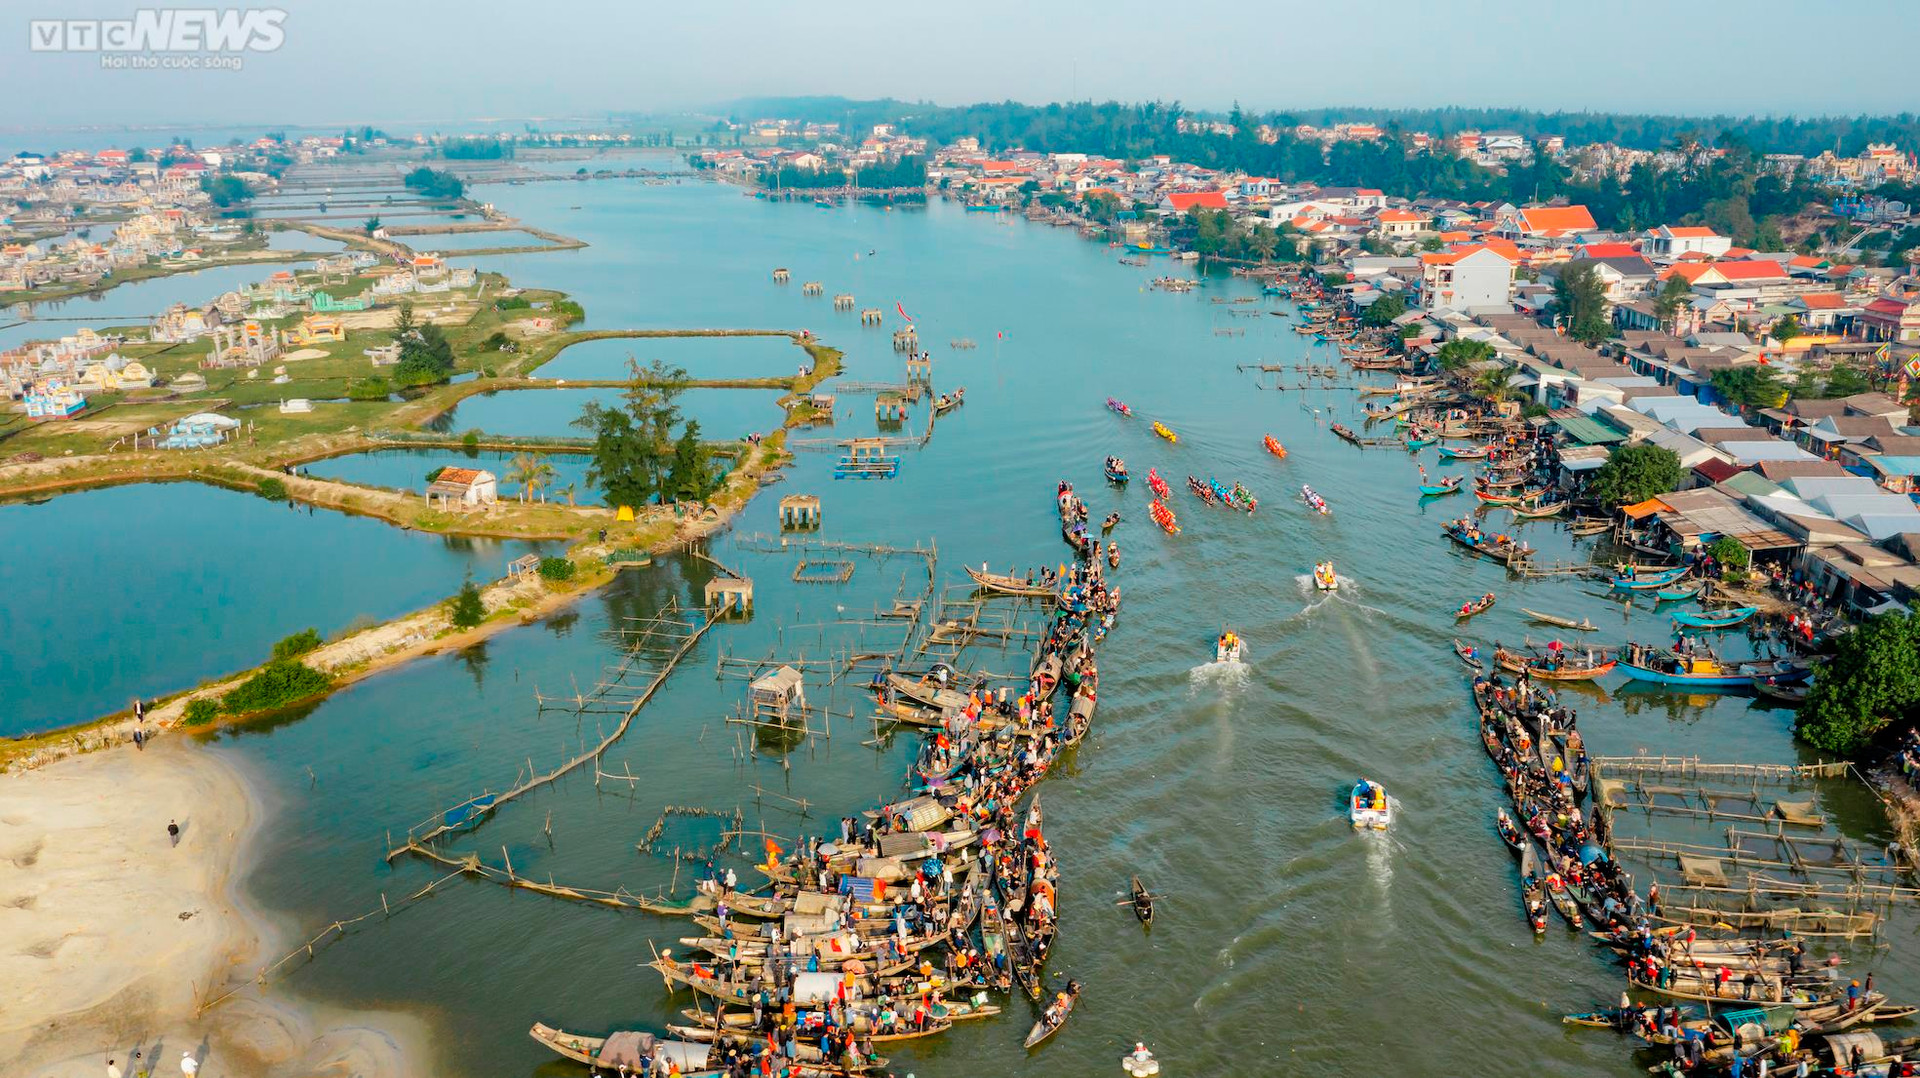 Trai tráng tranh tài đua thuyền ở lễ hội Cầu ngư lâu đời nhất cố đô Huế - 11